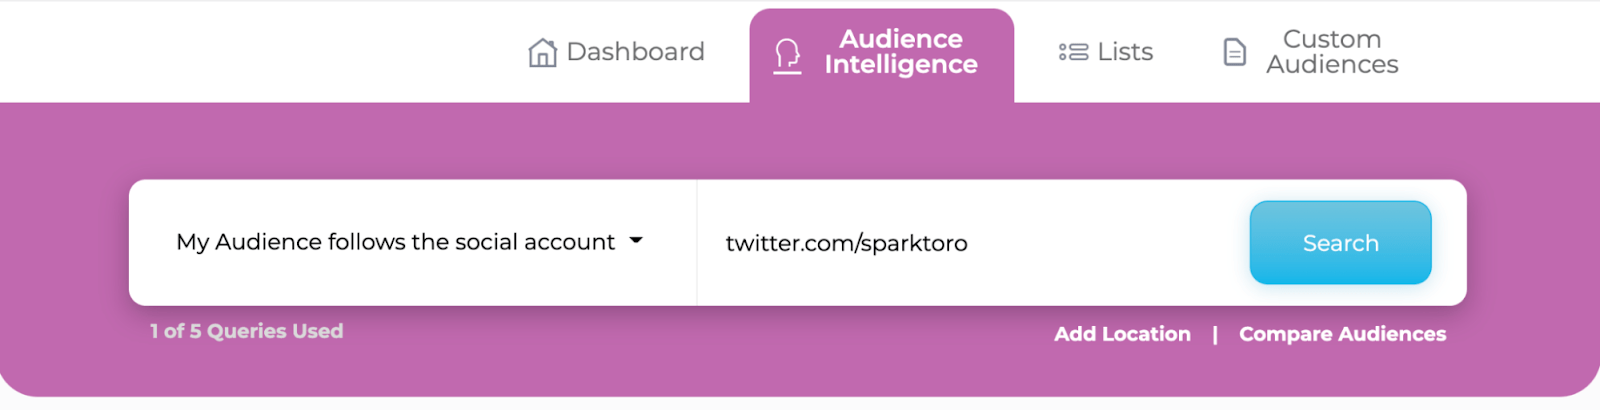 Campo de texto de SparkToro para ingresar la URL de la cuenta social para la cual se quiere adquirir inteligencia de audiencia